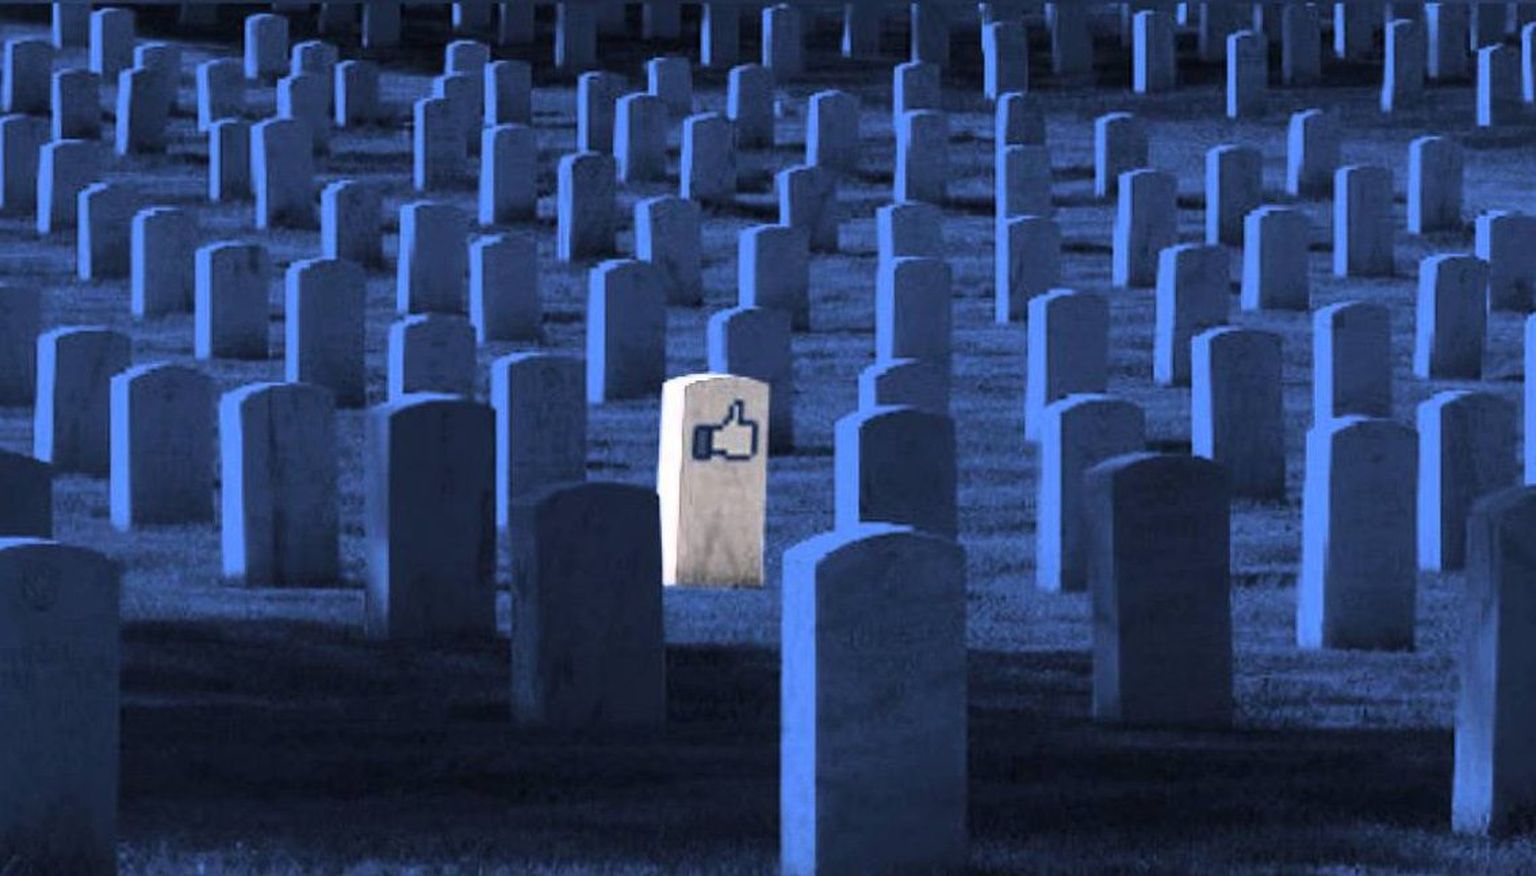 Facebookis võib ühel hetkel kätte jõuda aeg, kui enamik kasutajaid on surnud.